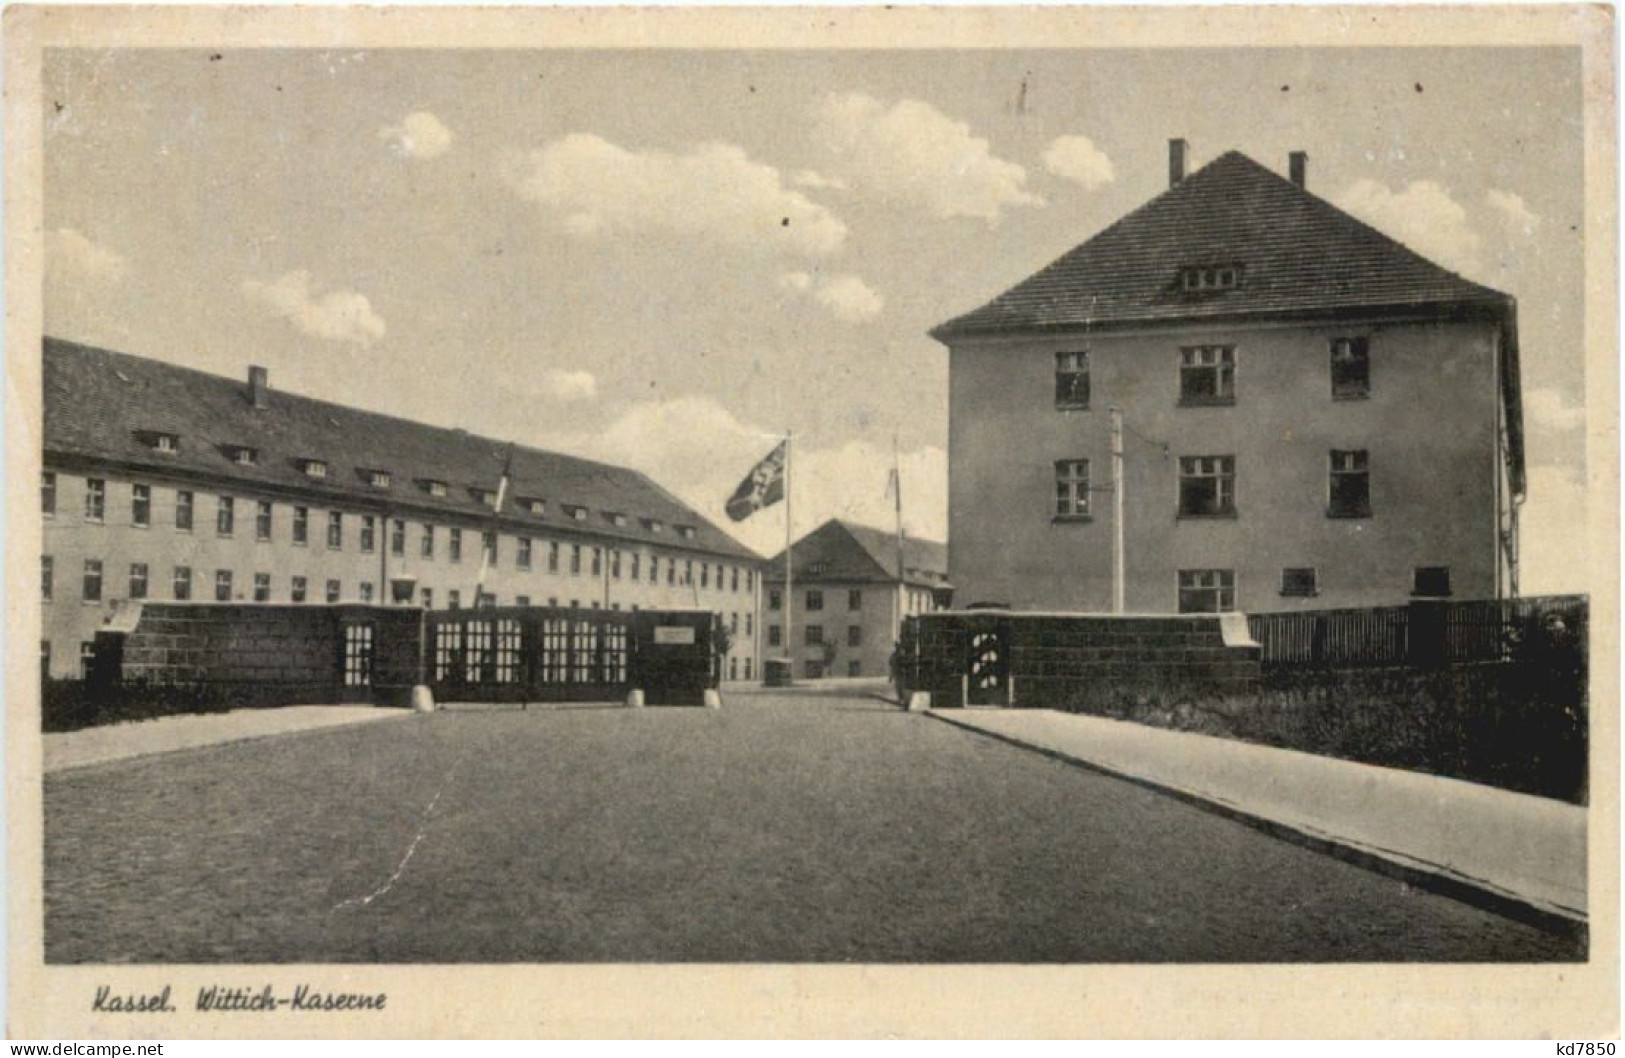 Kassel - Wittich-Kaserne 3. Reich - Dortmund